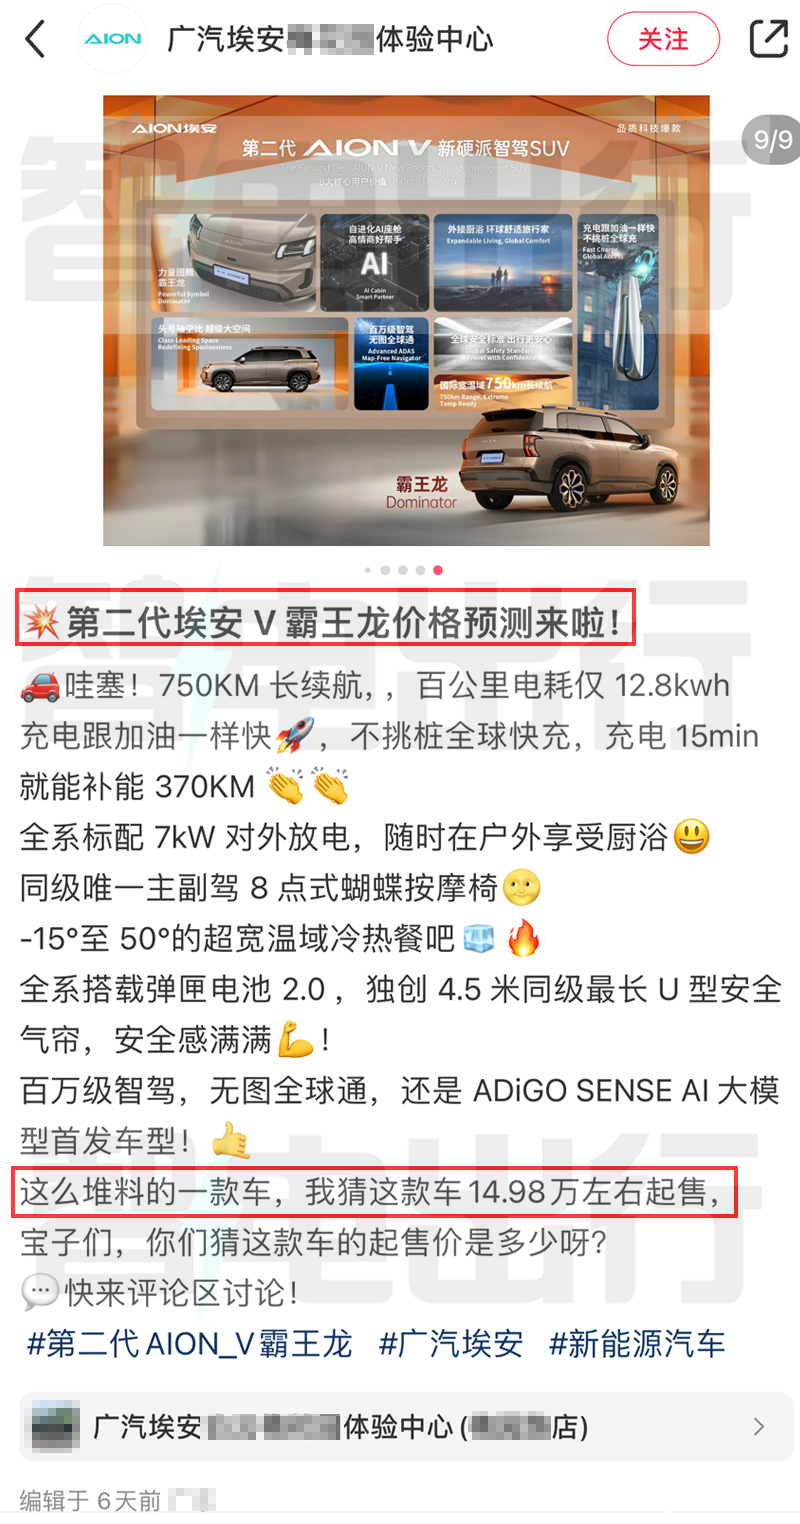 埃安第二代AION V预计7月23日上市销售剧透价格-图4